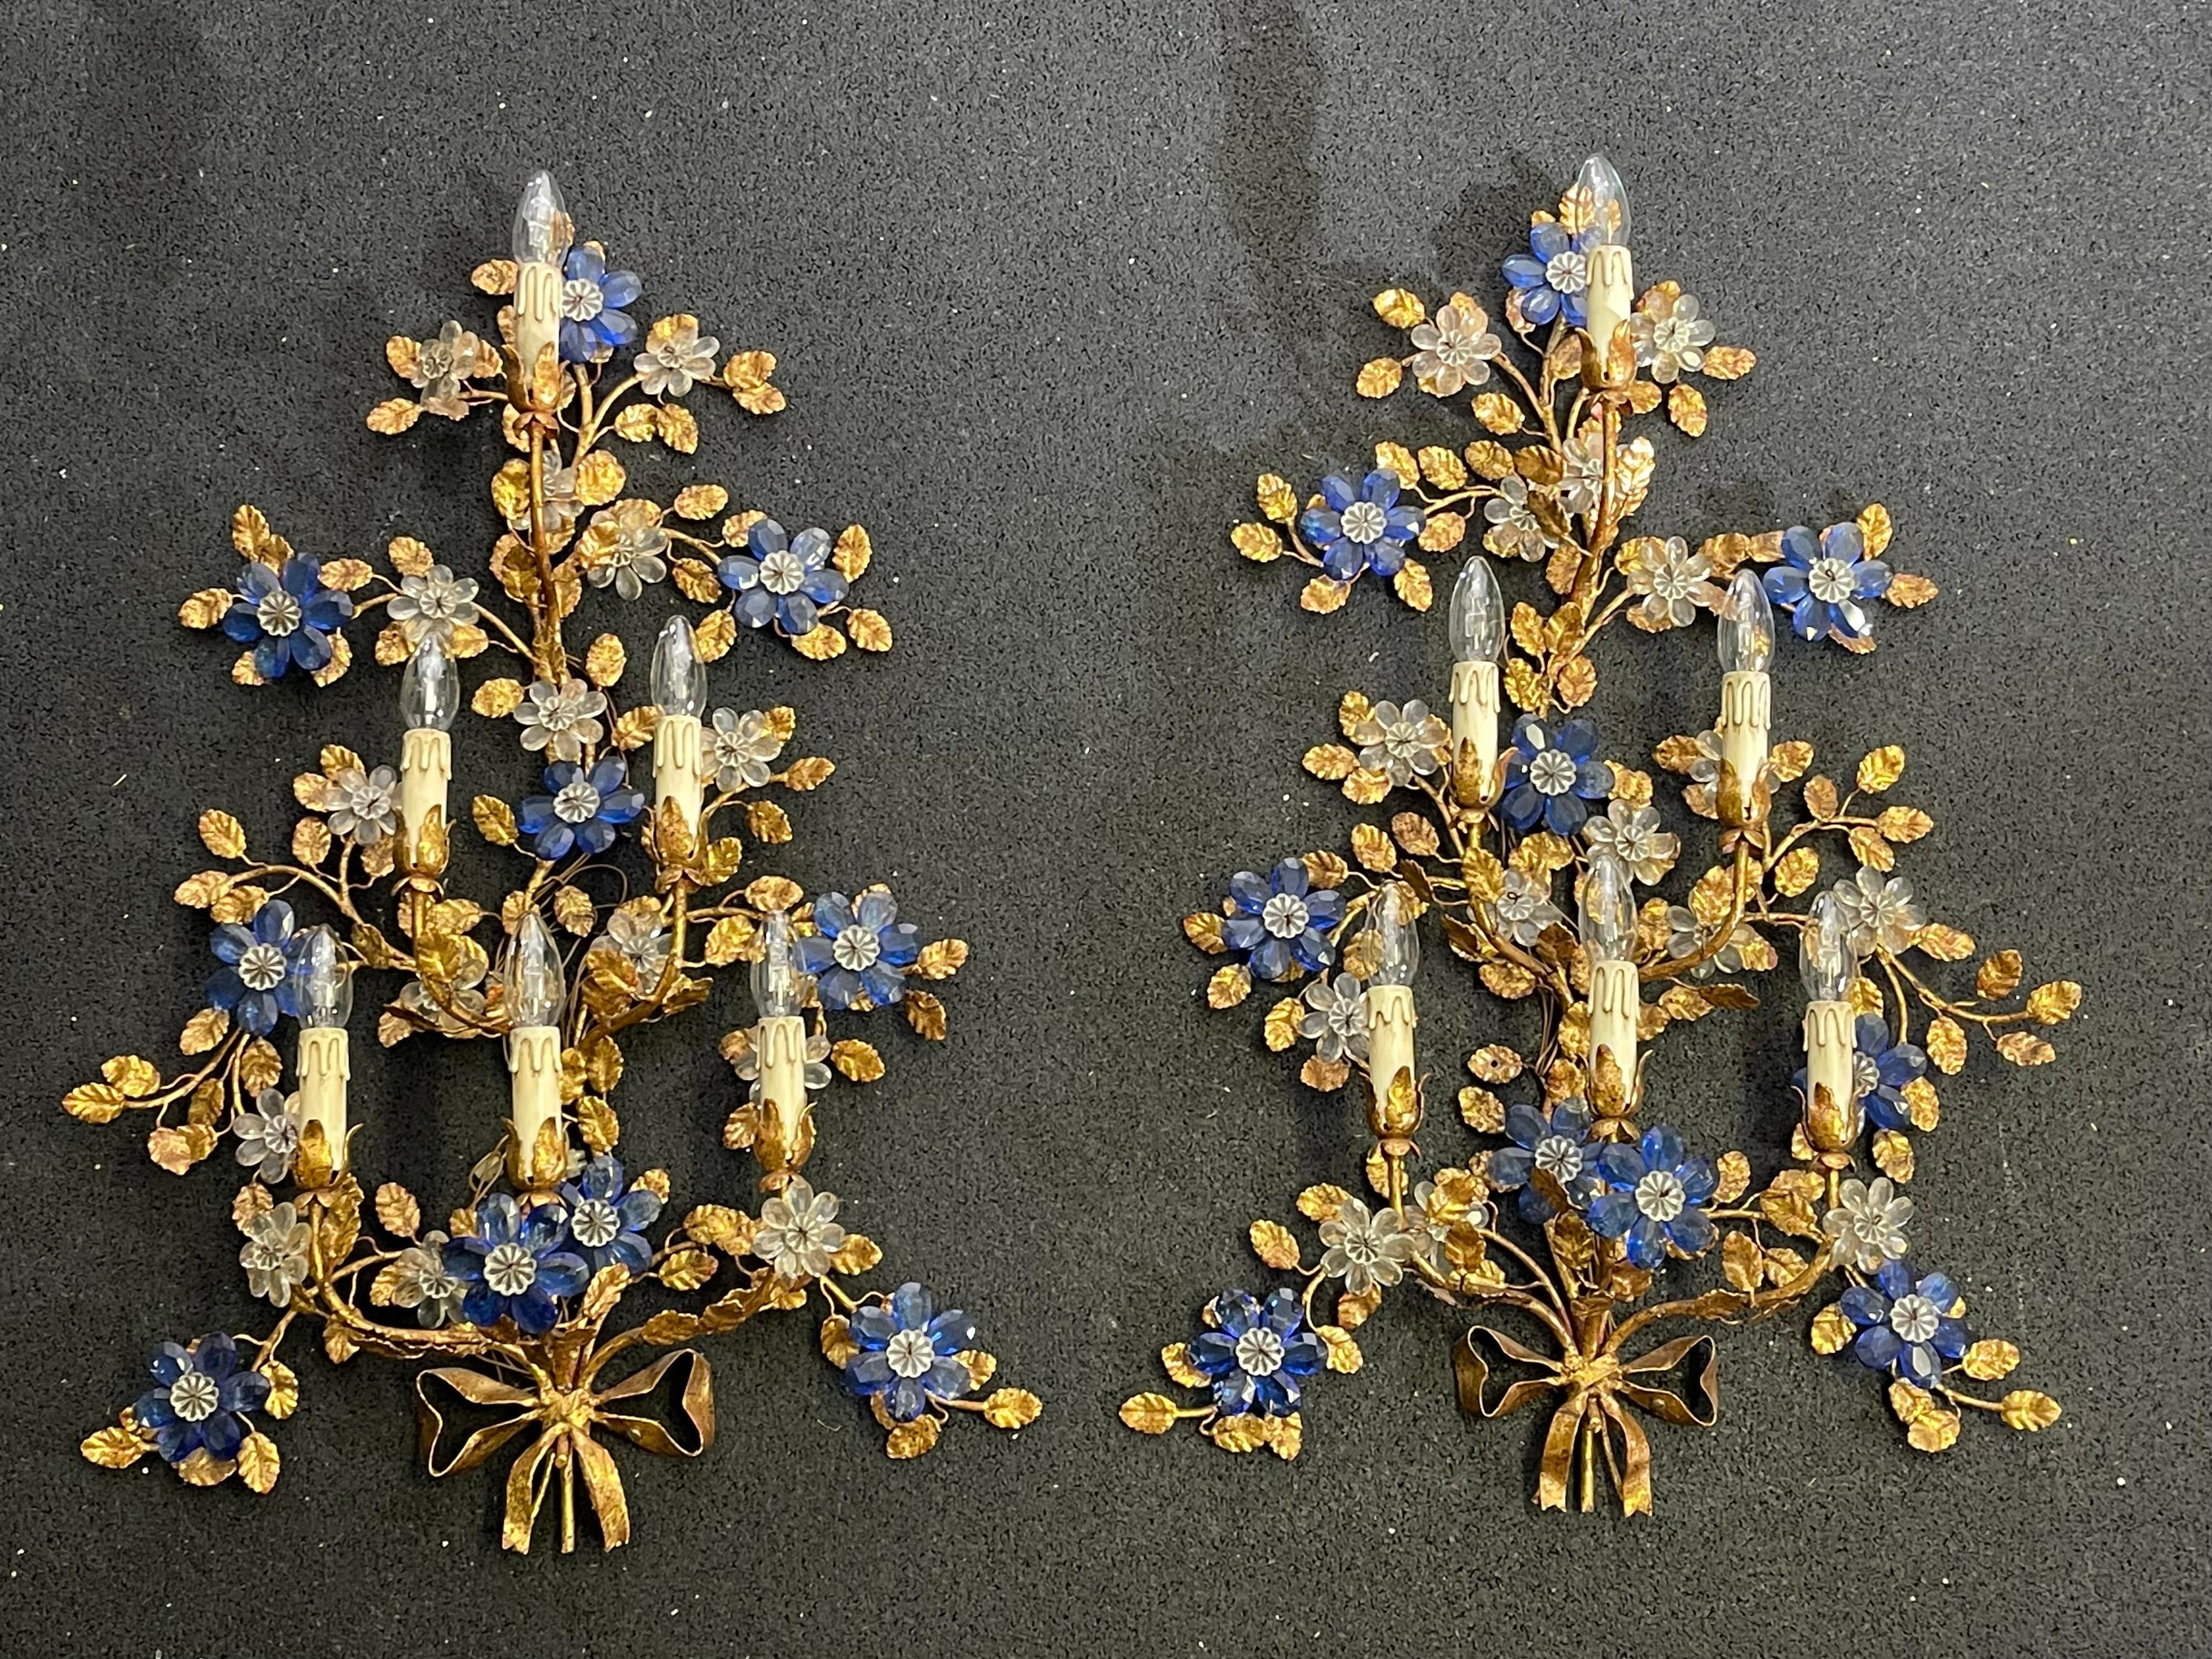 Ein wunderschönes Paar Wandleuchter aus vergoldetem Eisen und Kristallblumen.
Italien, ca. 1970er Jahre.
Abmessungen: H 35,43